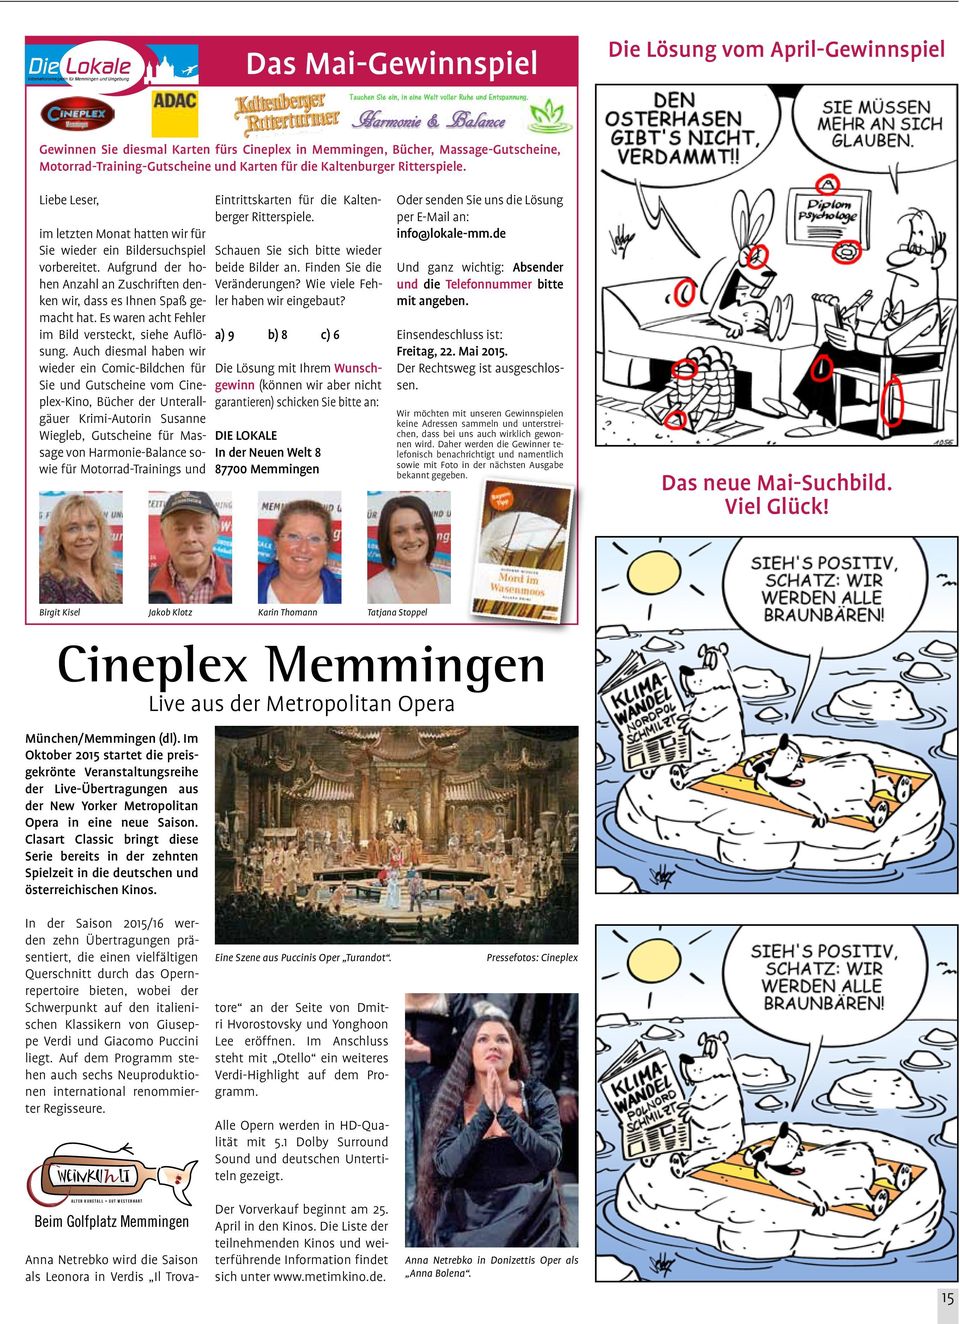 Auch diesmal haben wir wieder ein Comic-Bildchen für Sie und Gutscheine vom Cineplex-Kino, Bücher der Unterallgäuer Krimi-Autorin Susanne Wiegleb, Gutscheine für Massage von Harmonie-Balance sowie